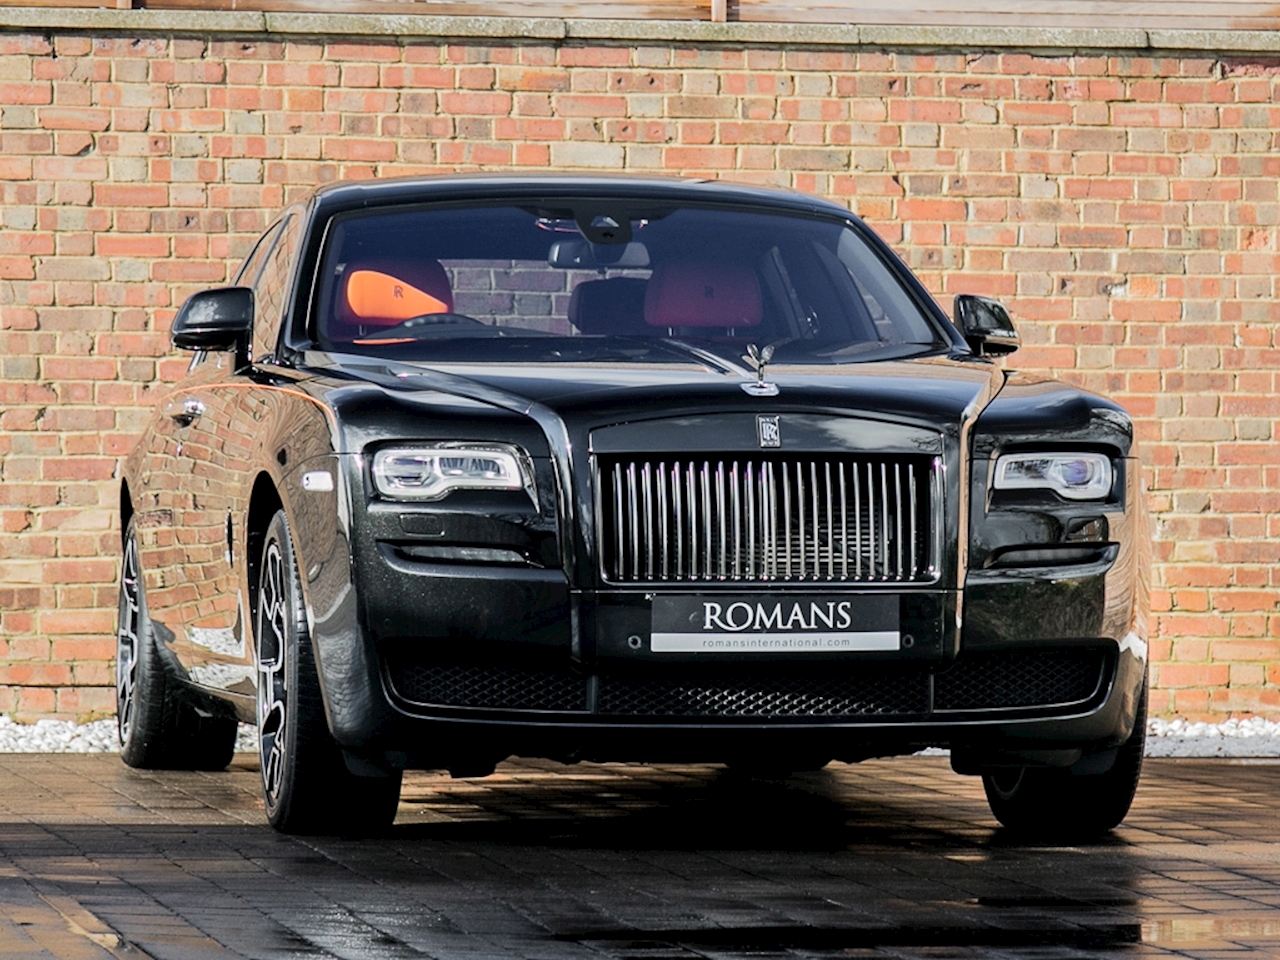 Rolls Royce Ghost with Diamonds in Paint  fairwheelscom